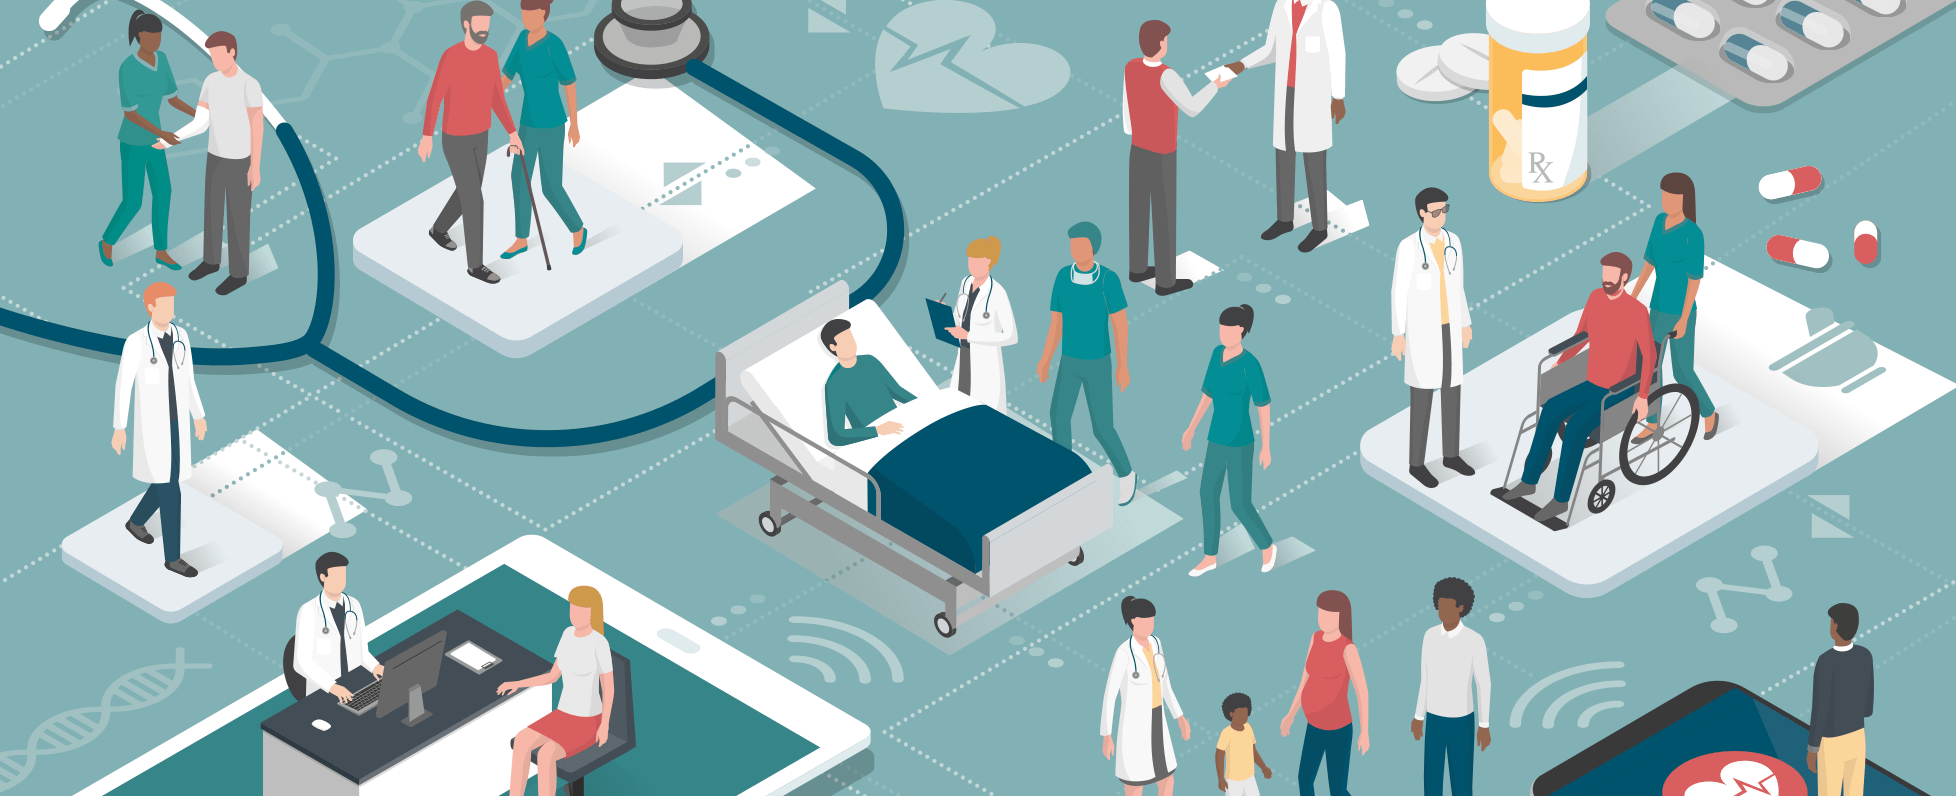 「ITテクノロジーで医療現場の改善・向上を目指す」同社のチャレンジが、いよいよ佳境に入る。